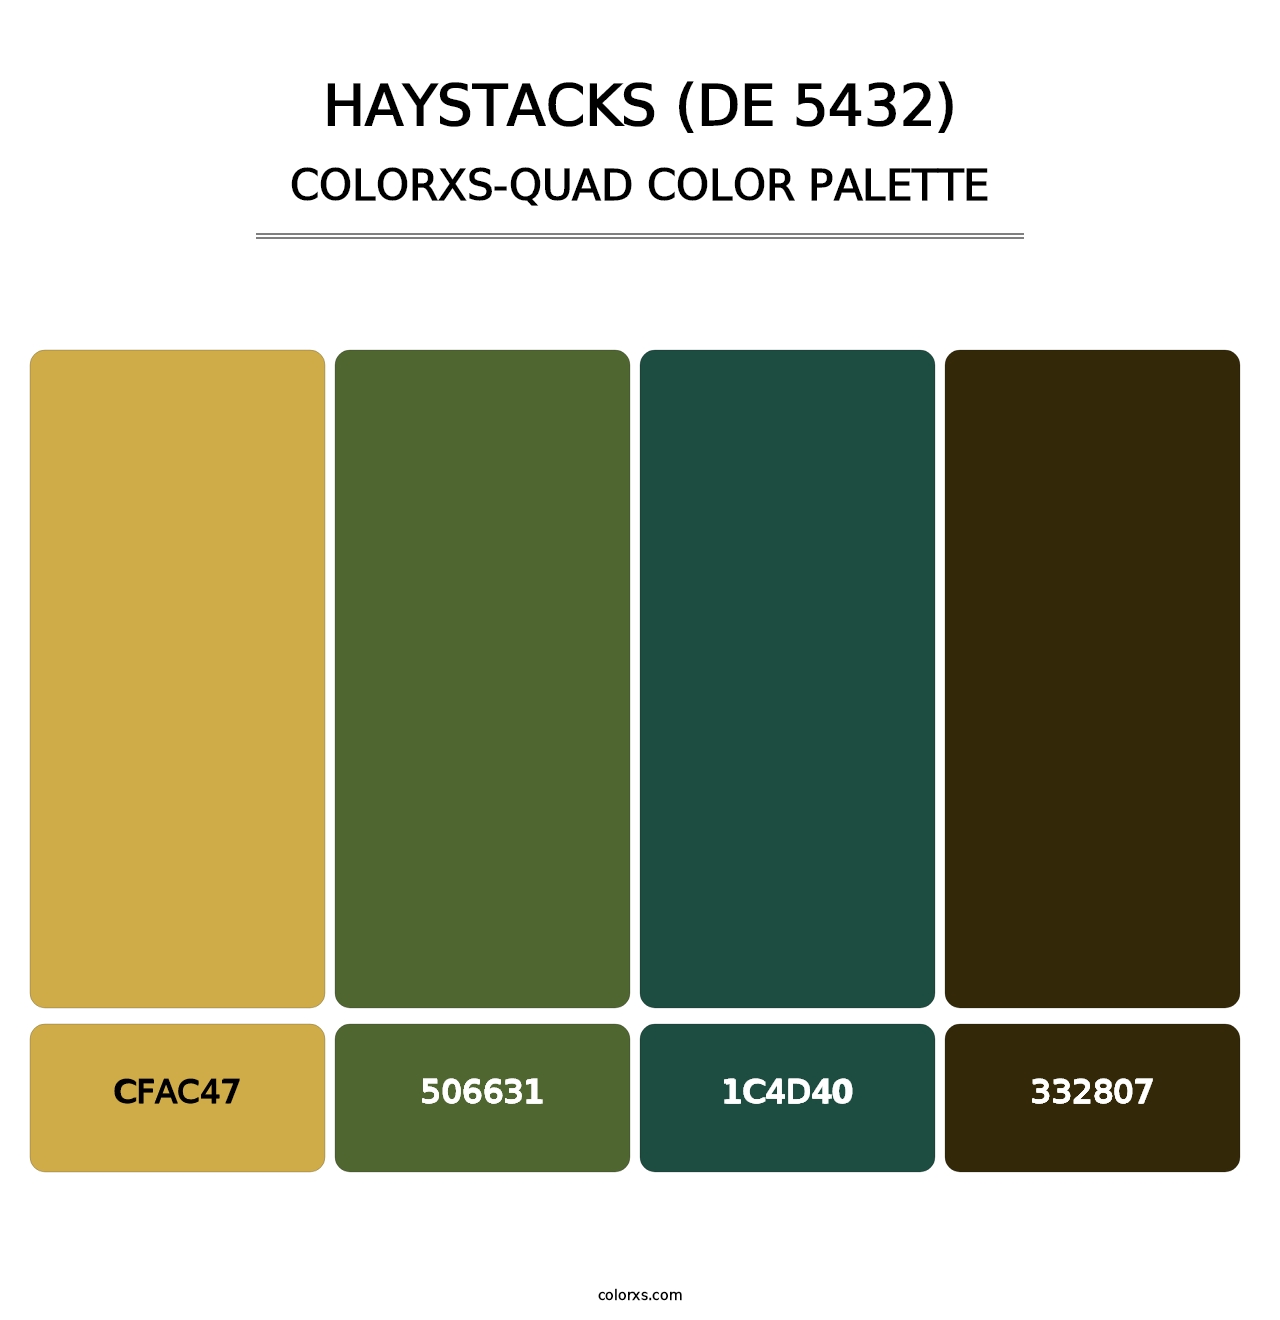 Haystacks (DE 5432) - Colorxs Quad Palette